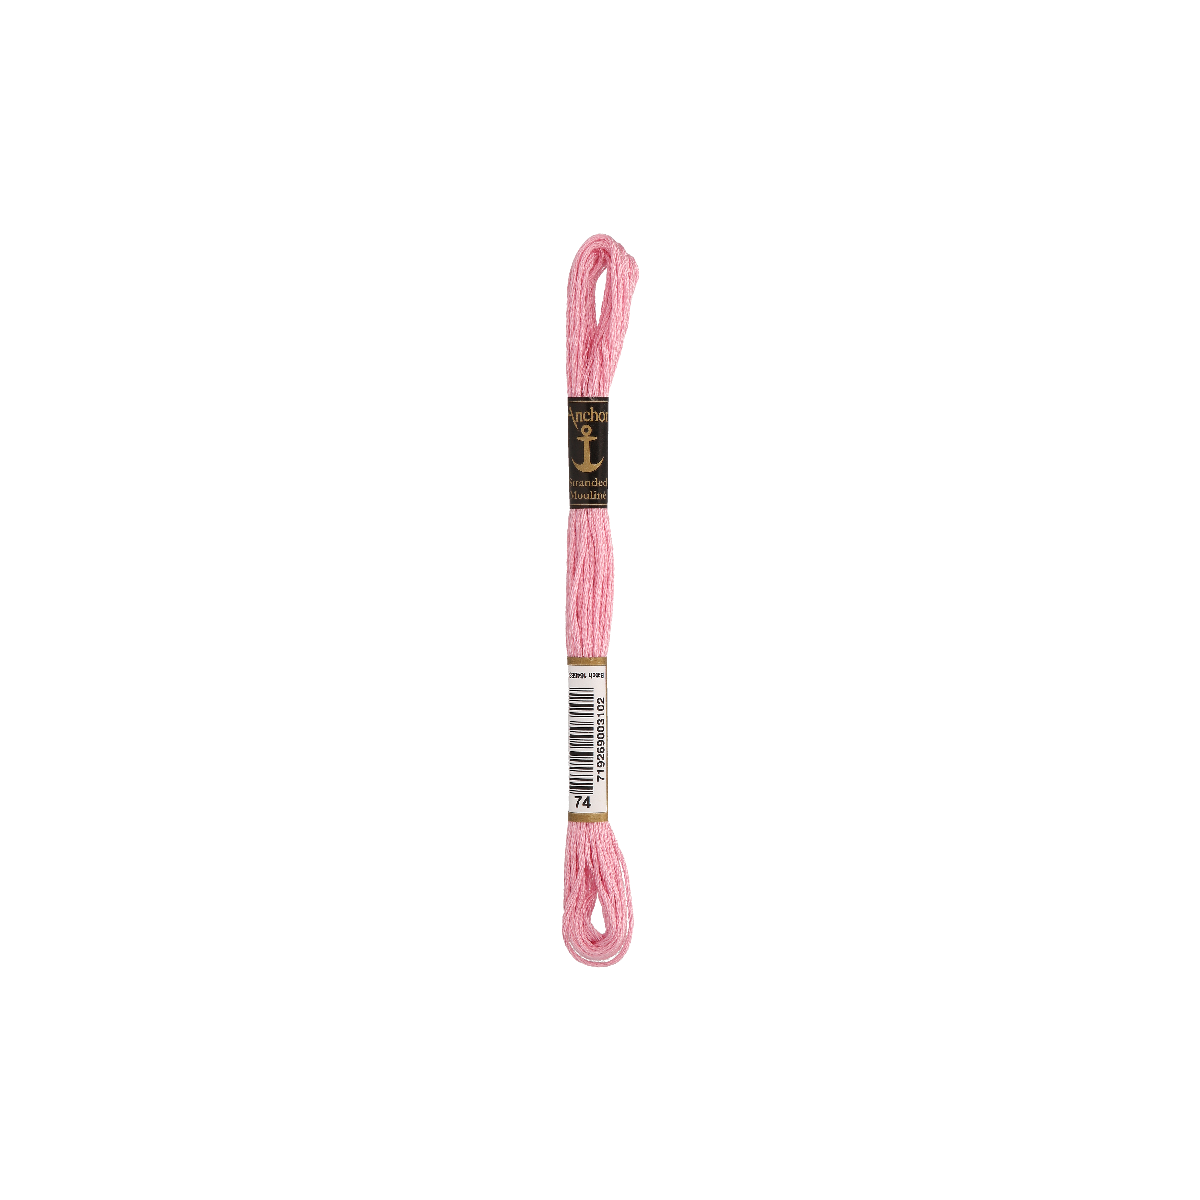 Anchor 8m, rose pastel, coton, couleur 74, 6 fils